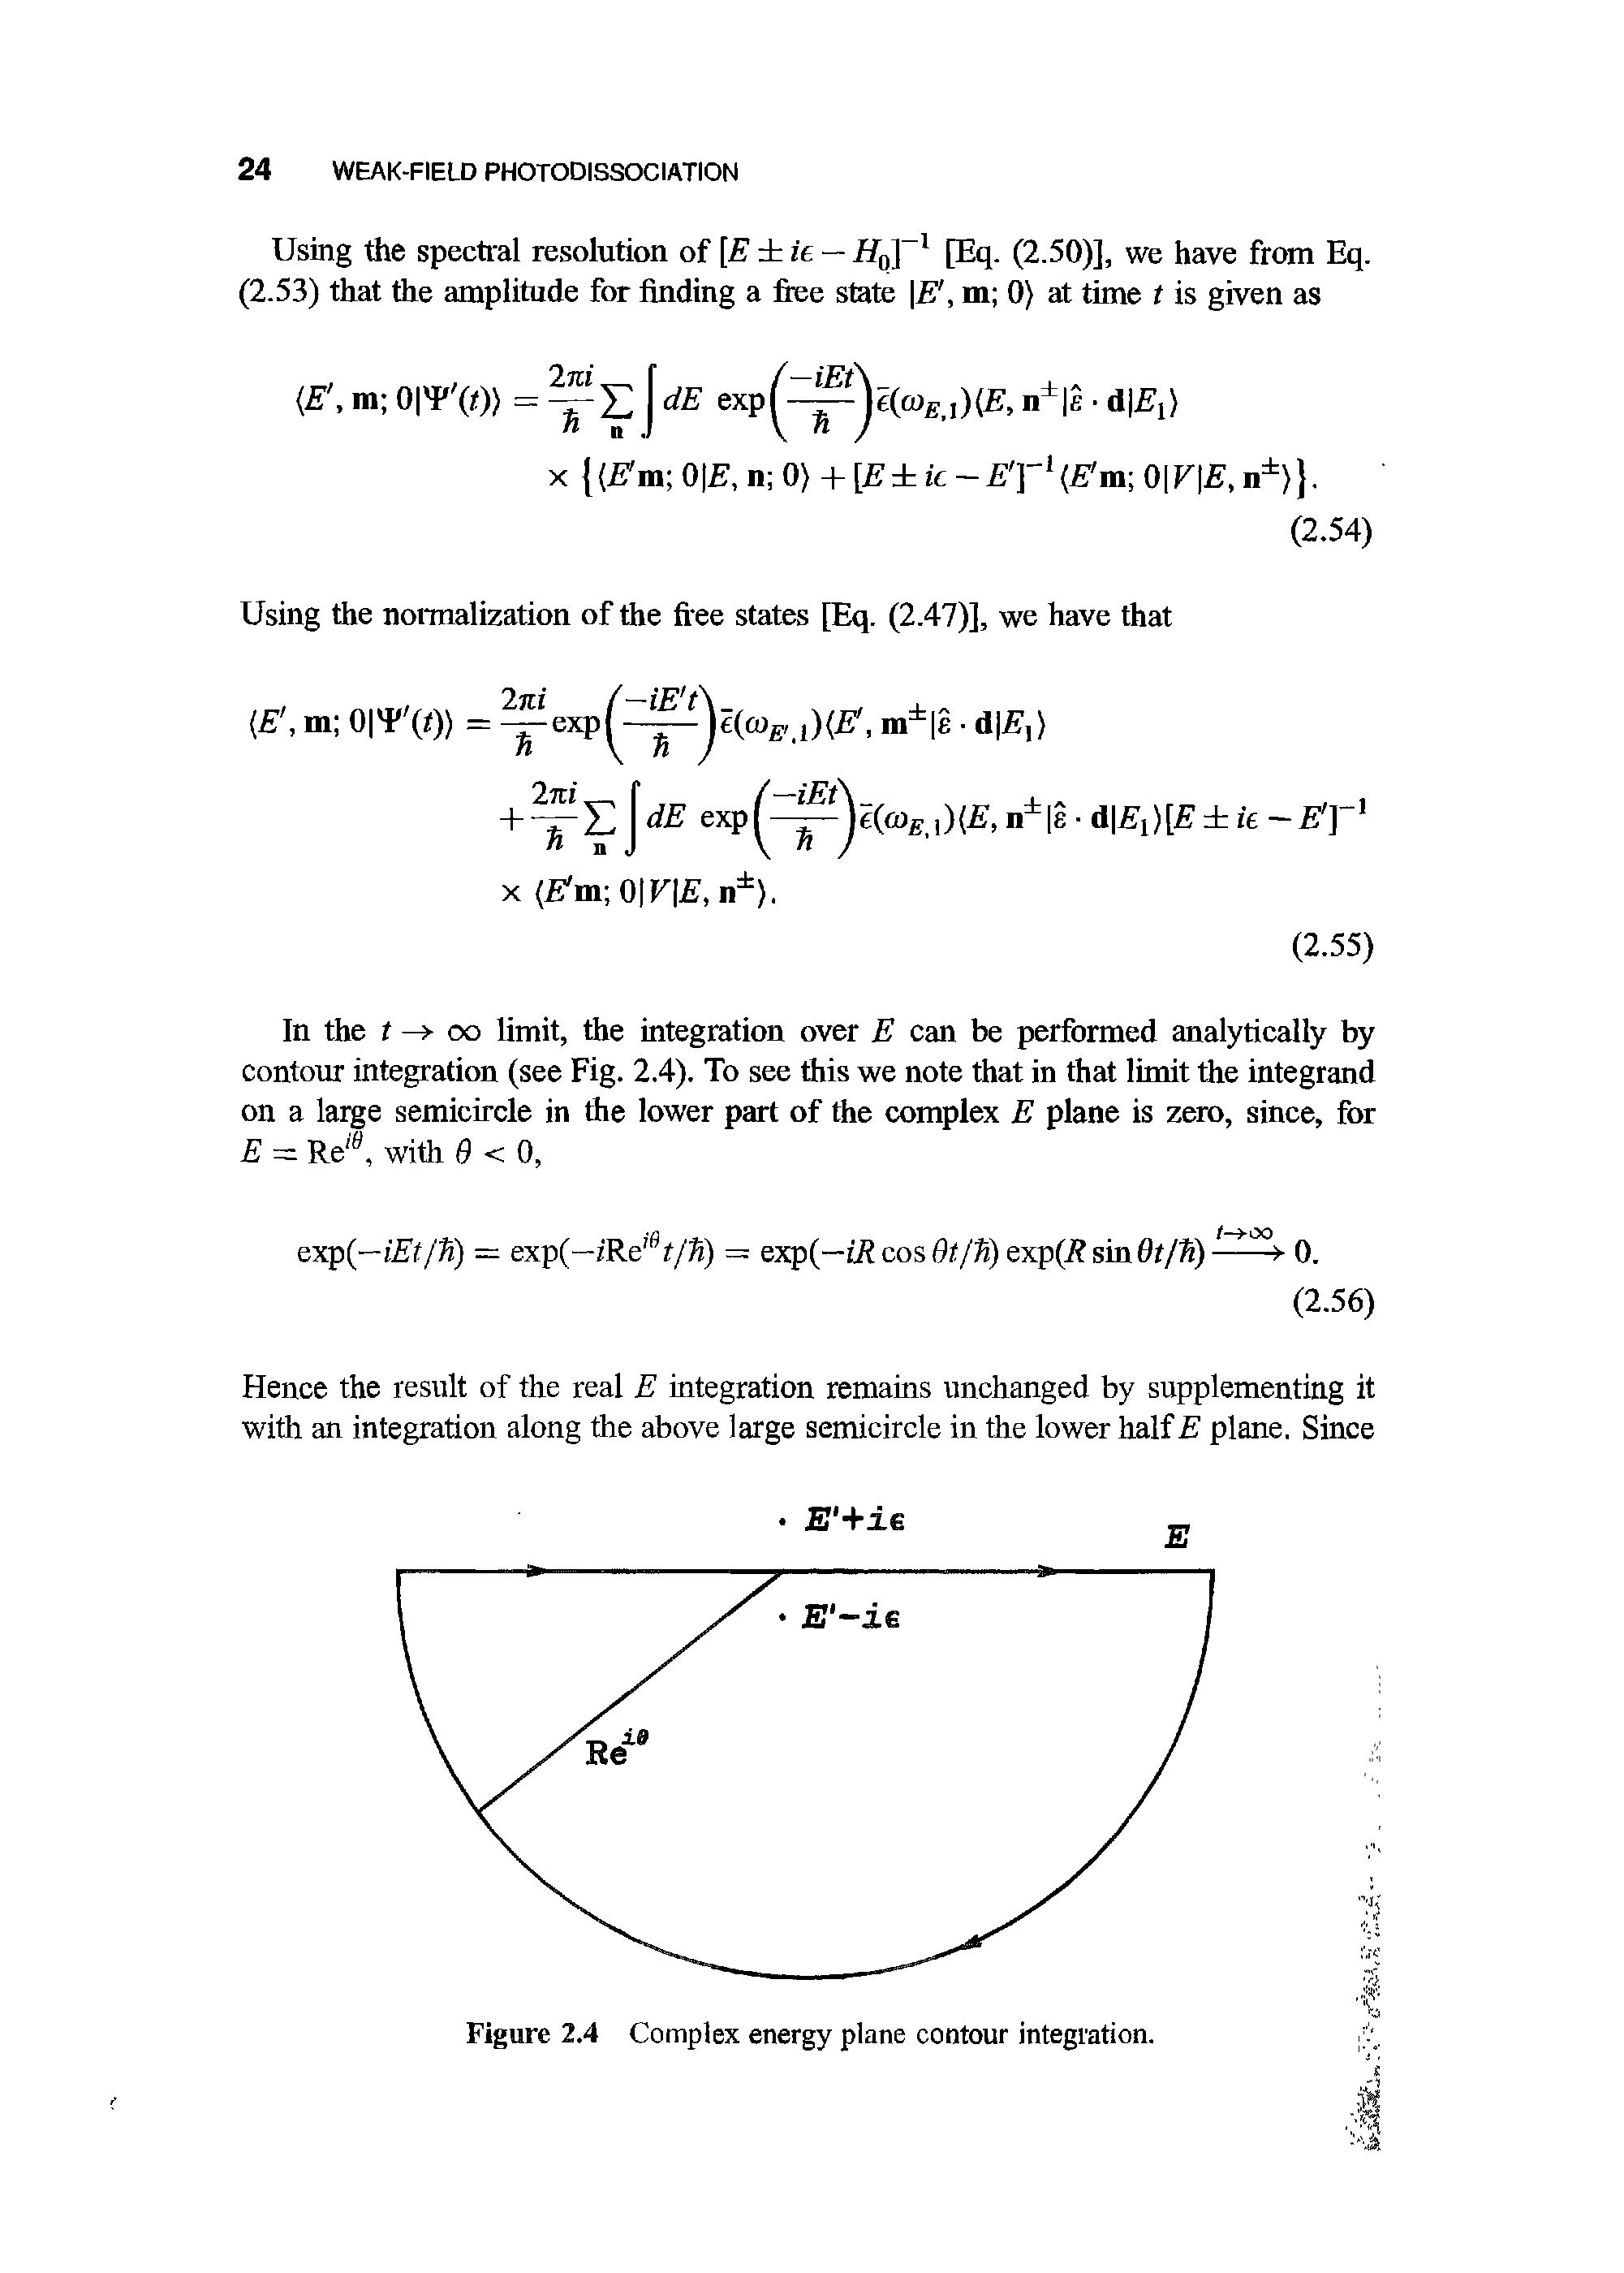 Figure 2.4 Complex energy plane contour integration.